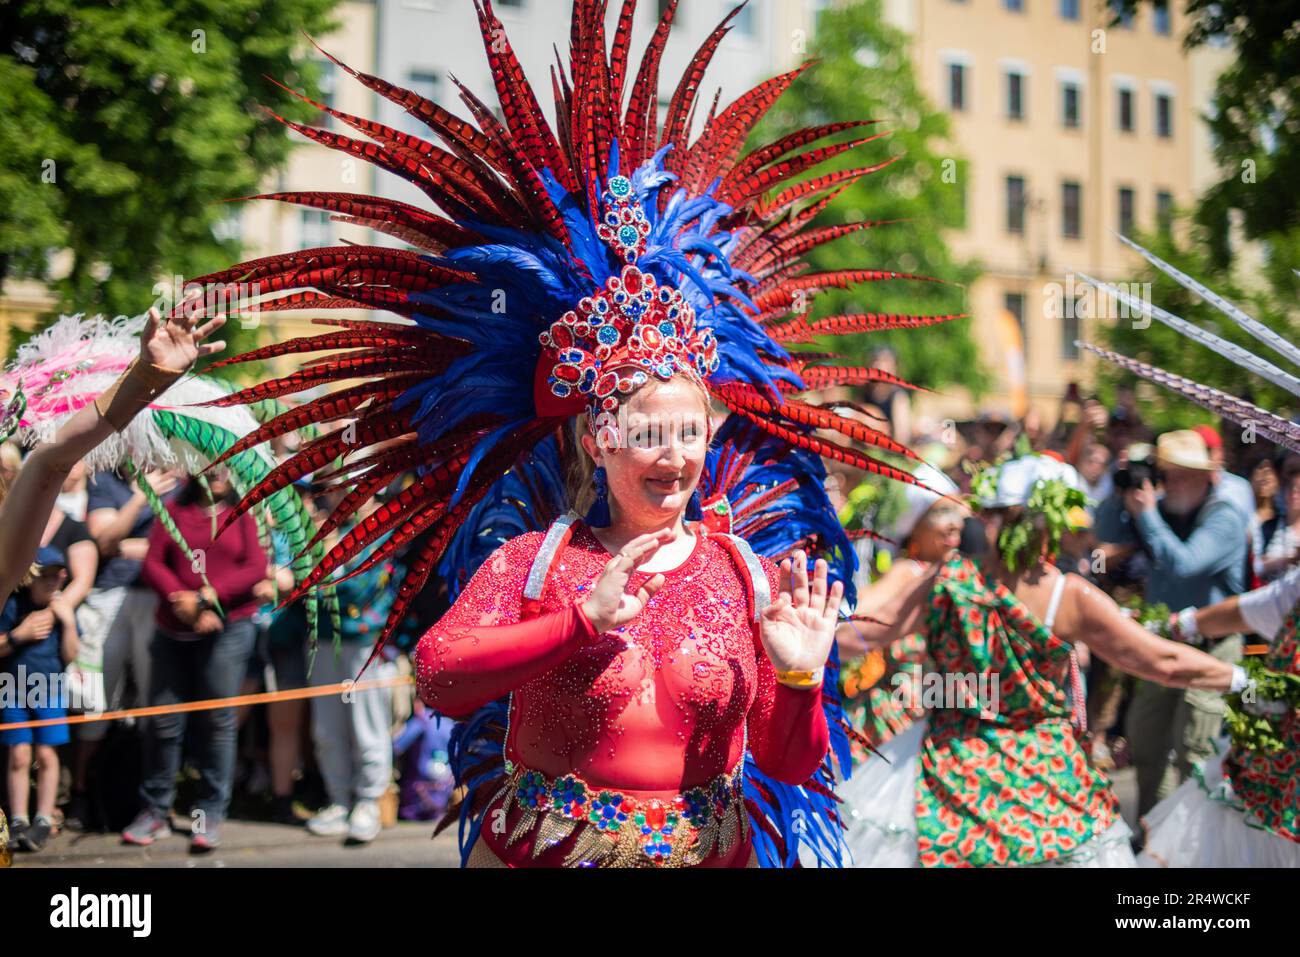 Der Karneval der Kulturen in Berlin erreichte mit der großen Straßenparade am Pfingstsonntag in Kreuzberg seinen Höhepunkt. Dieses spektakuläre Event Dre Stockfoto